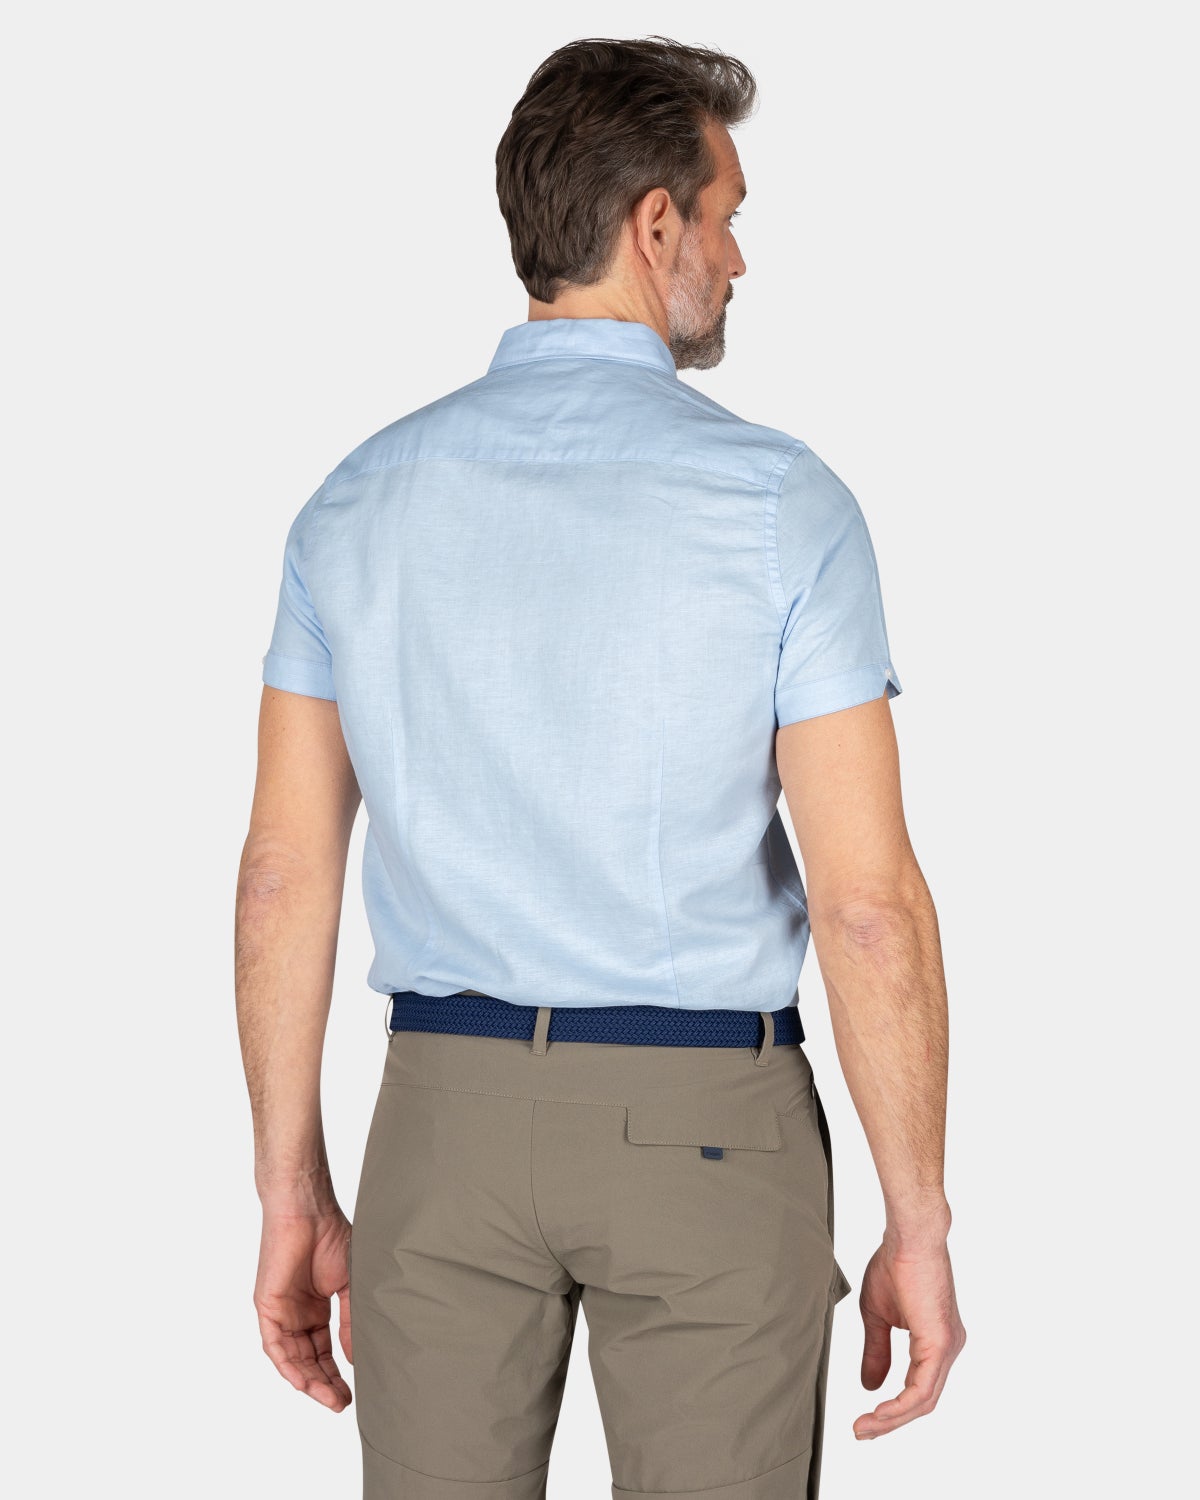 Plain shirt short sleeves - Rhythm Blue